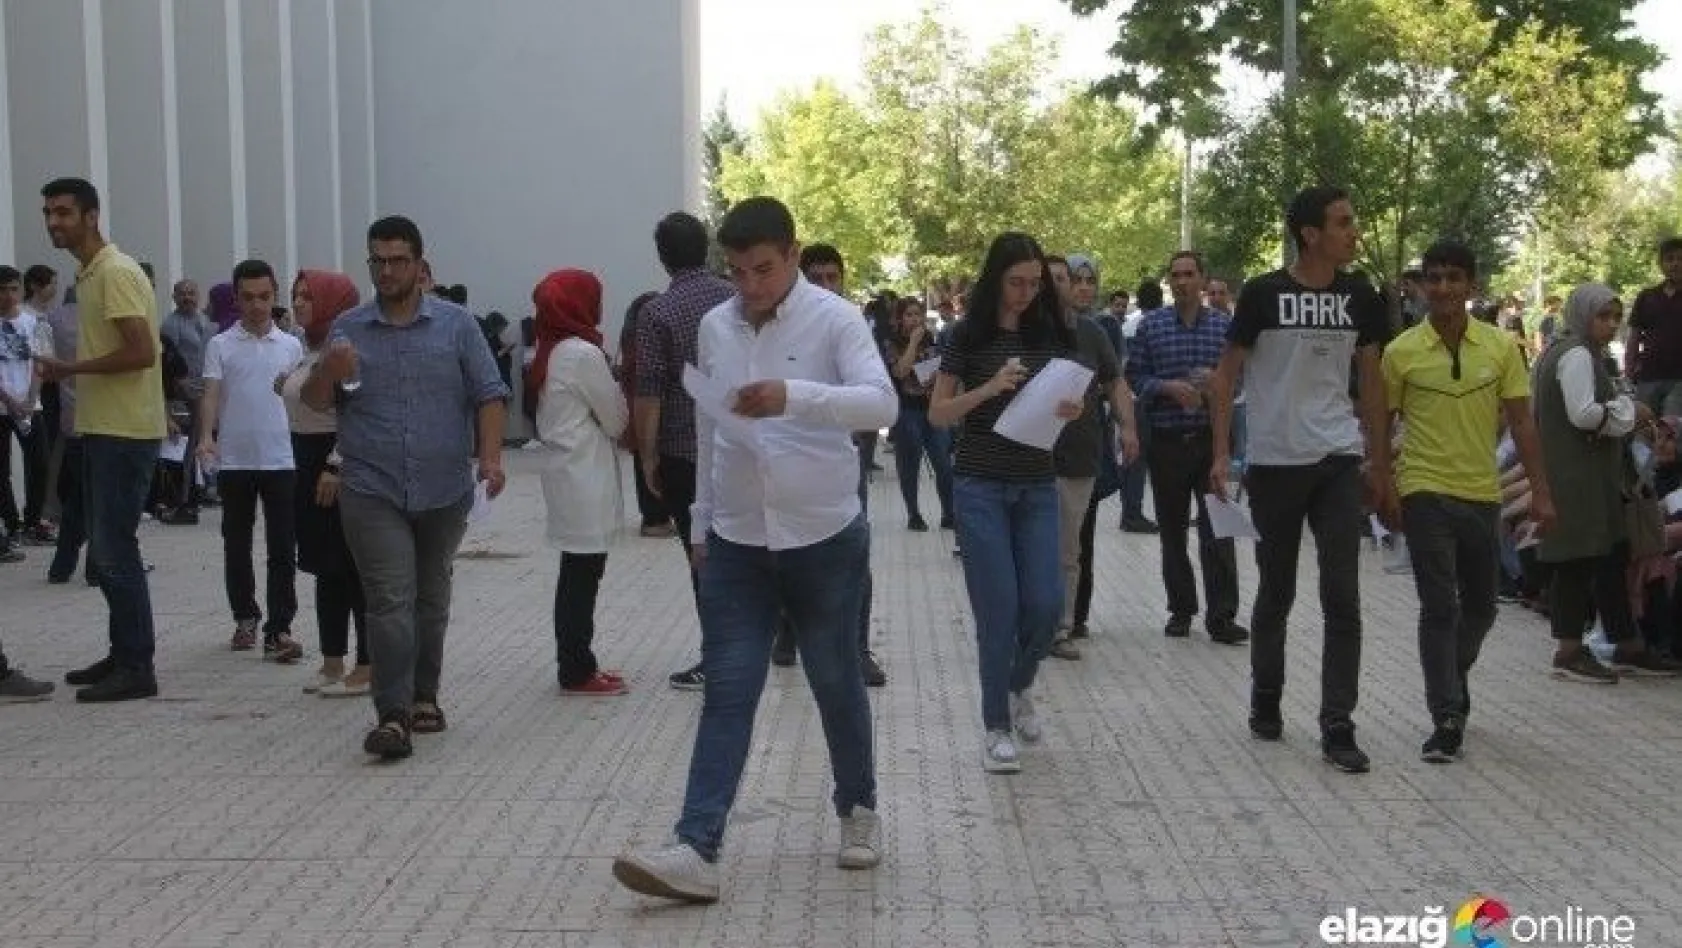 Elazığ'da üniversiteye girişte ikinci aşama heyecanı yaşandı